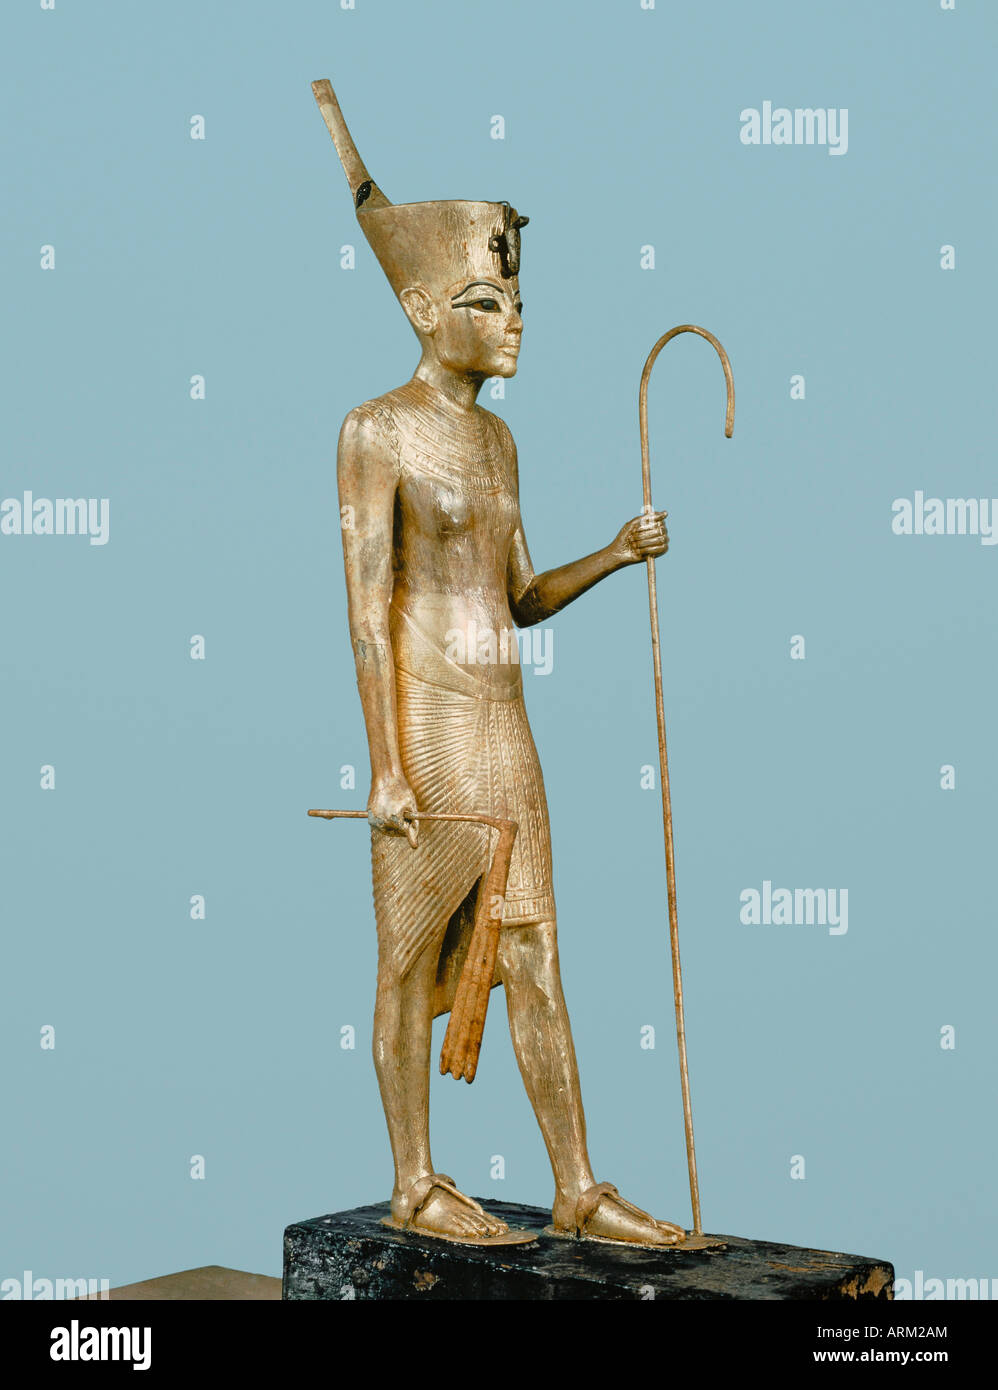 Madera dorada estatuilla del rey, de la tumba del faraón Tutankhamon Foto de stock